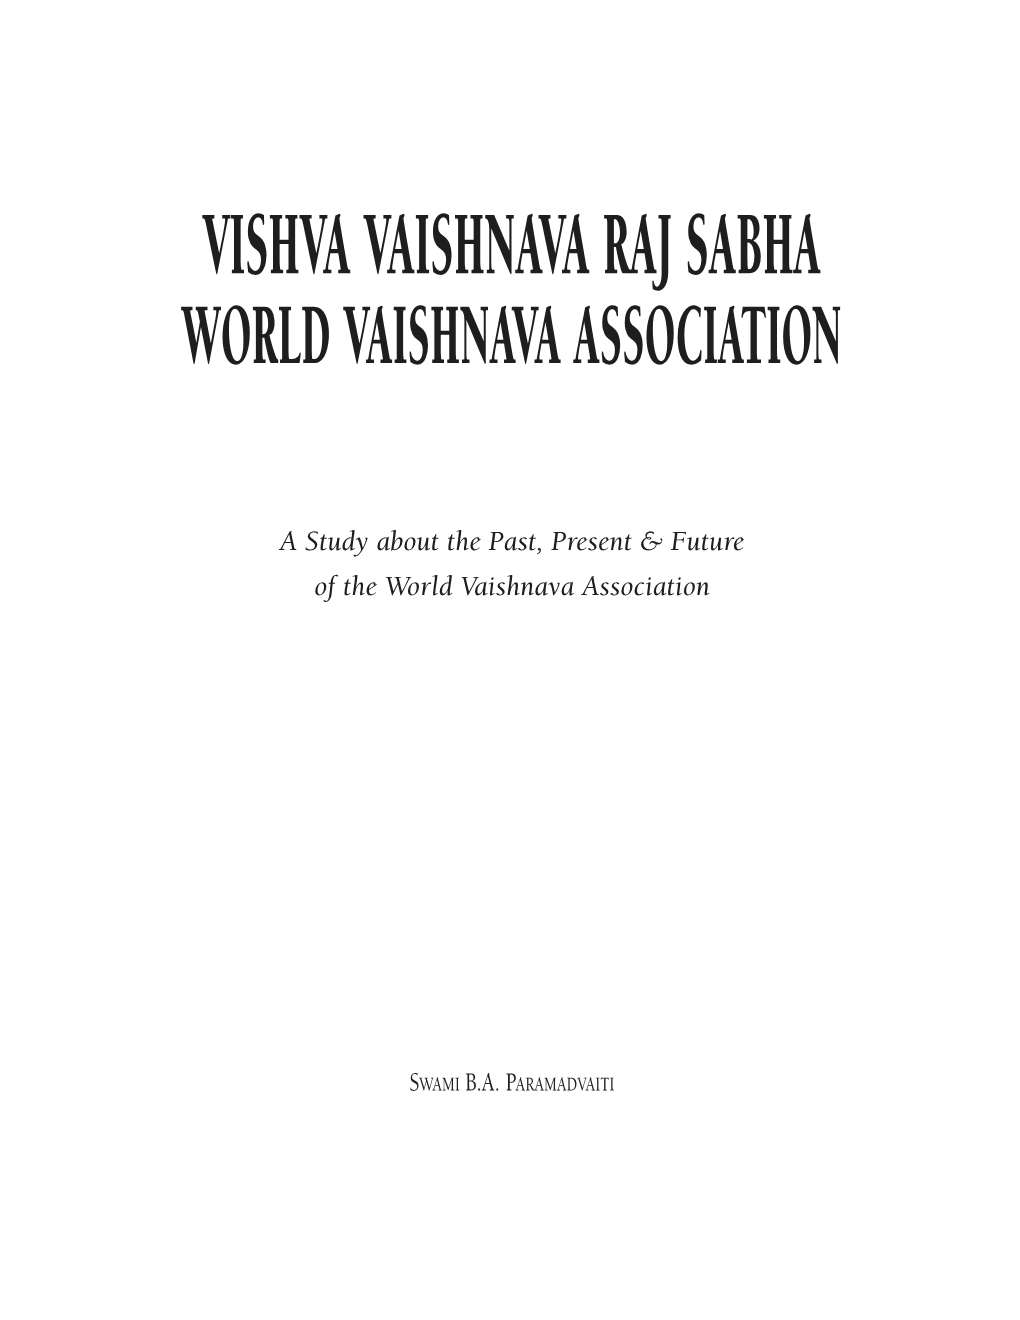 Vishva Vaishnava Raj Sabha World Vaishnava Association